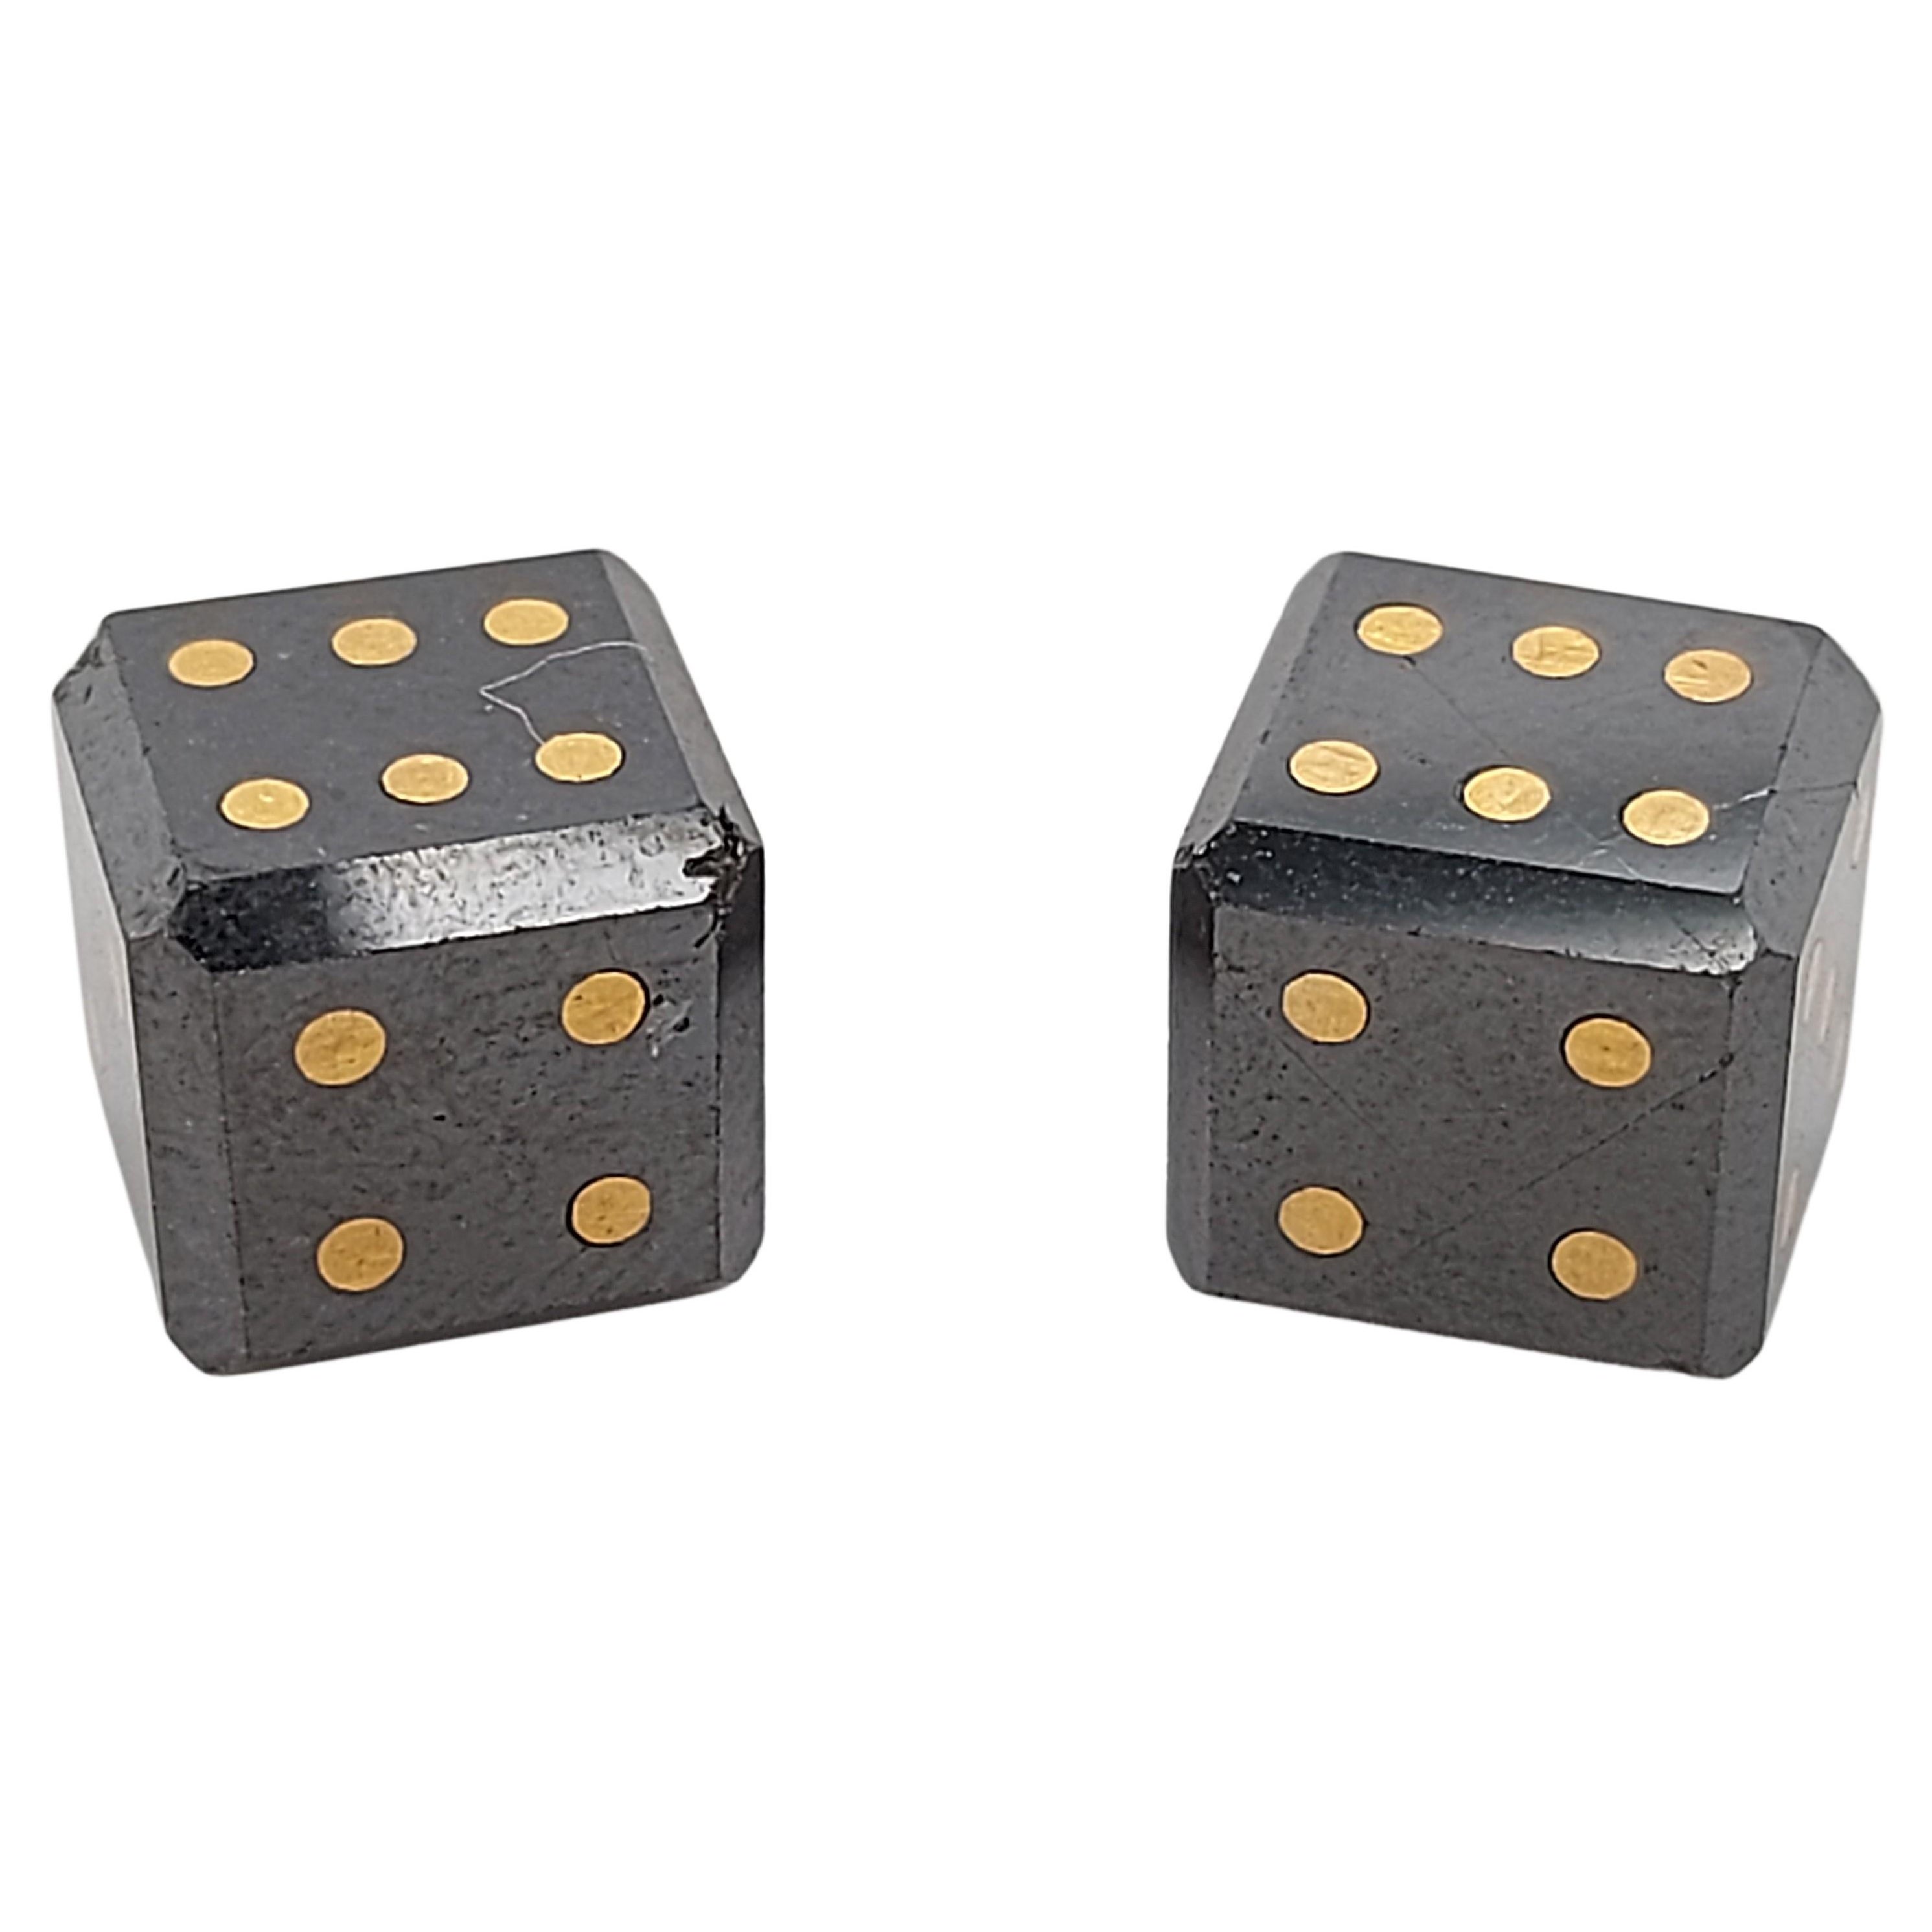 Pair of Natural 15, 4 Carat Black Diamond Cubes/Dice with Gold Inlay